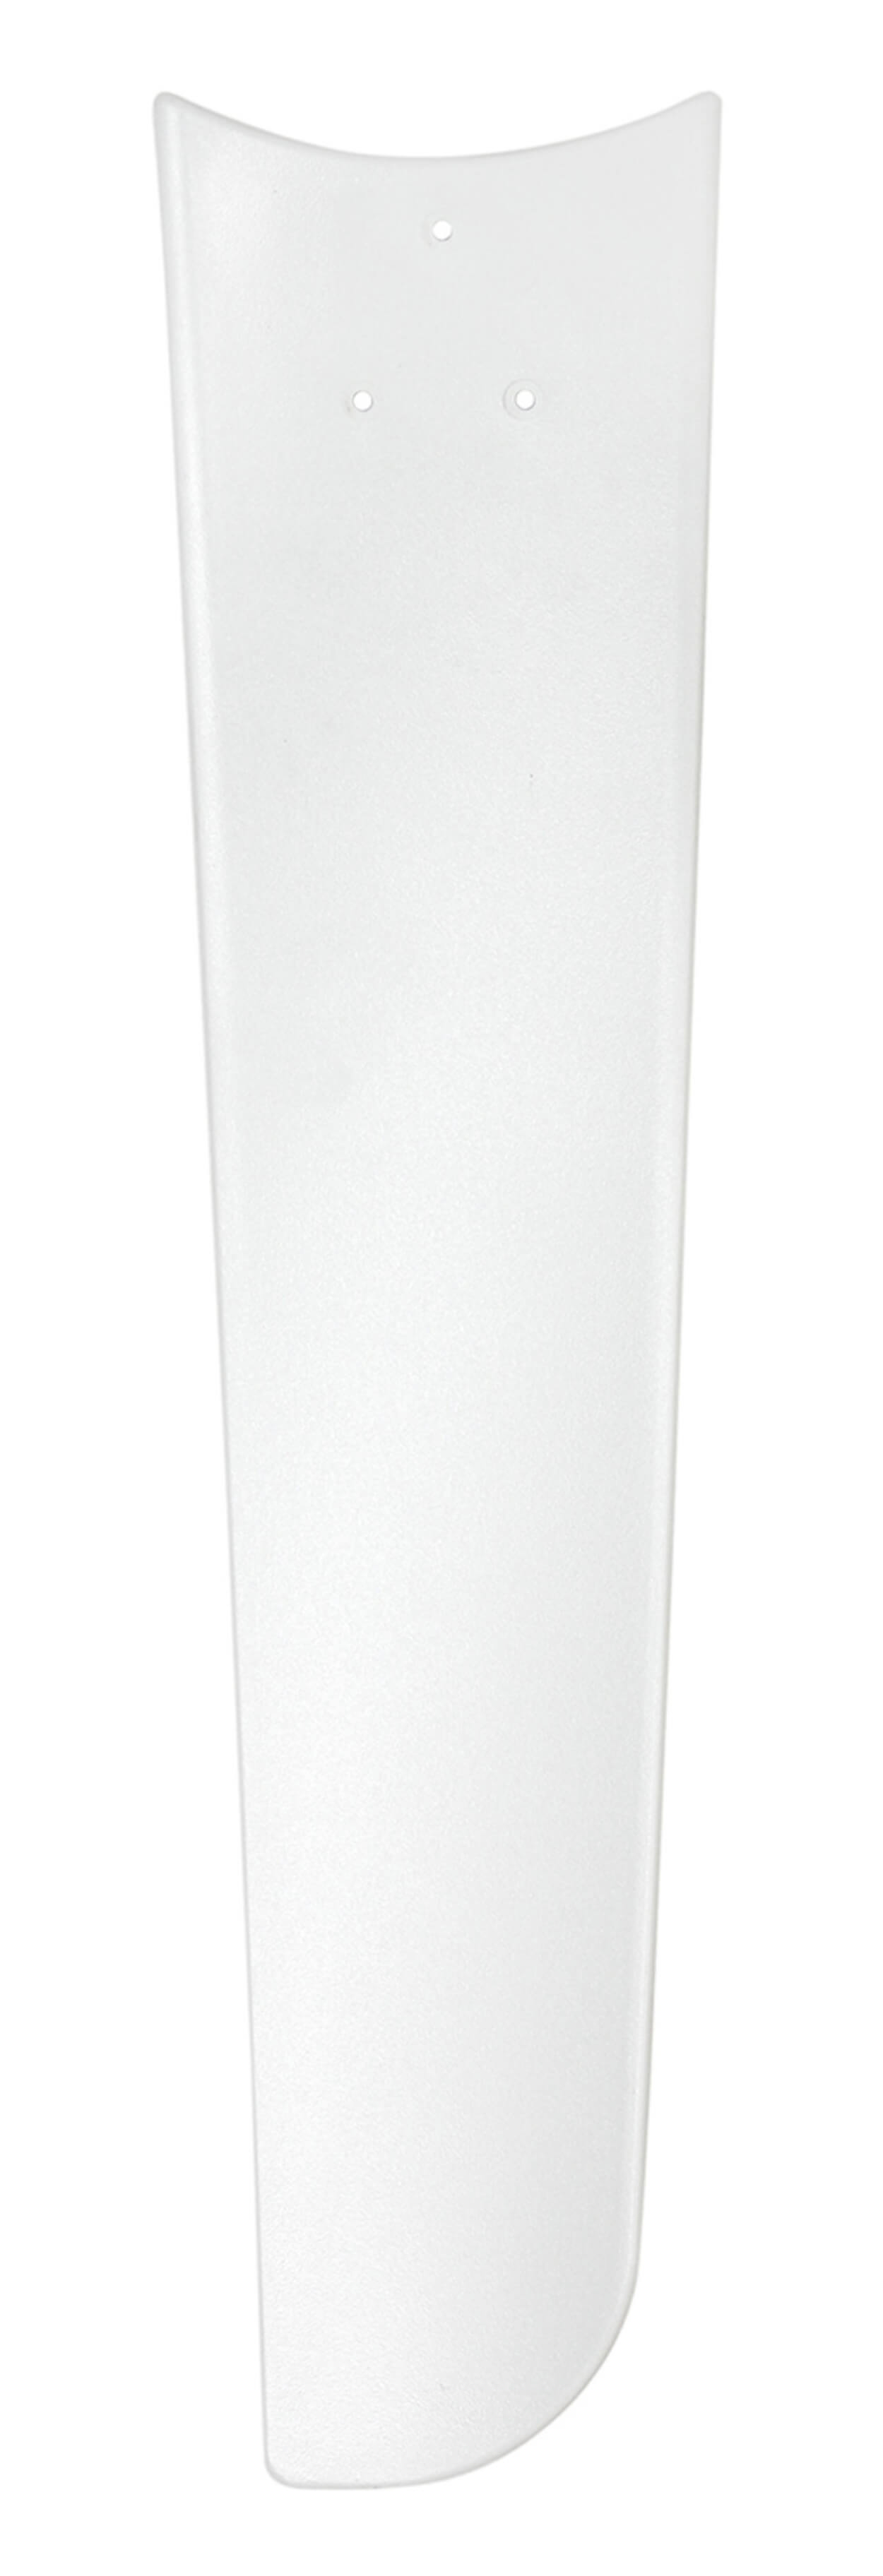 CASAFAN Deckenventilator Mirage (62 Watt) Weiß